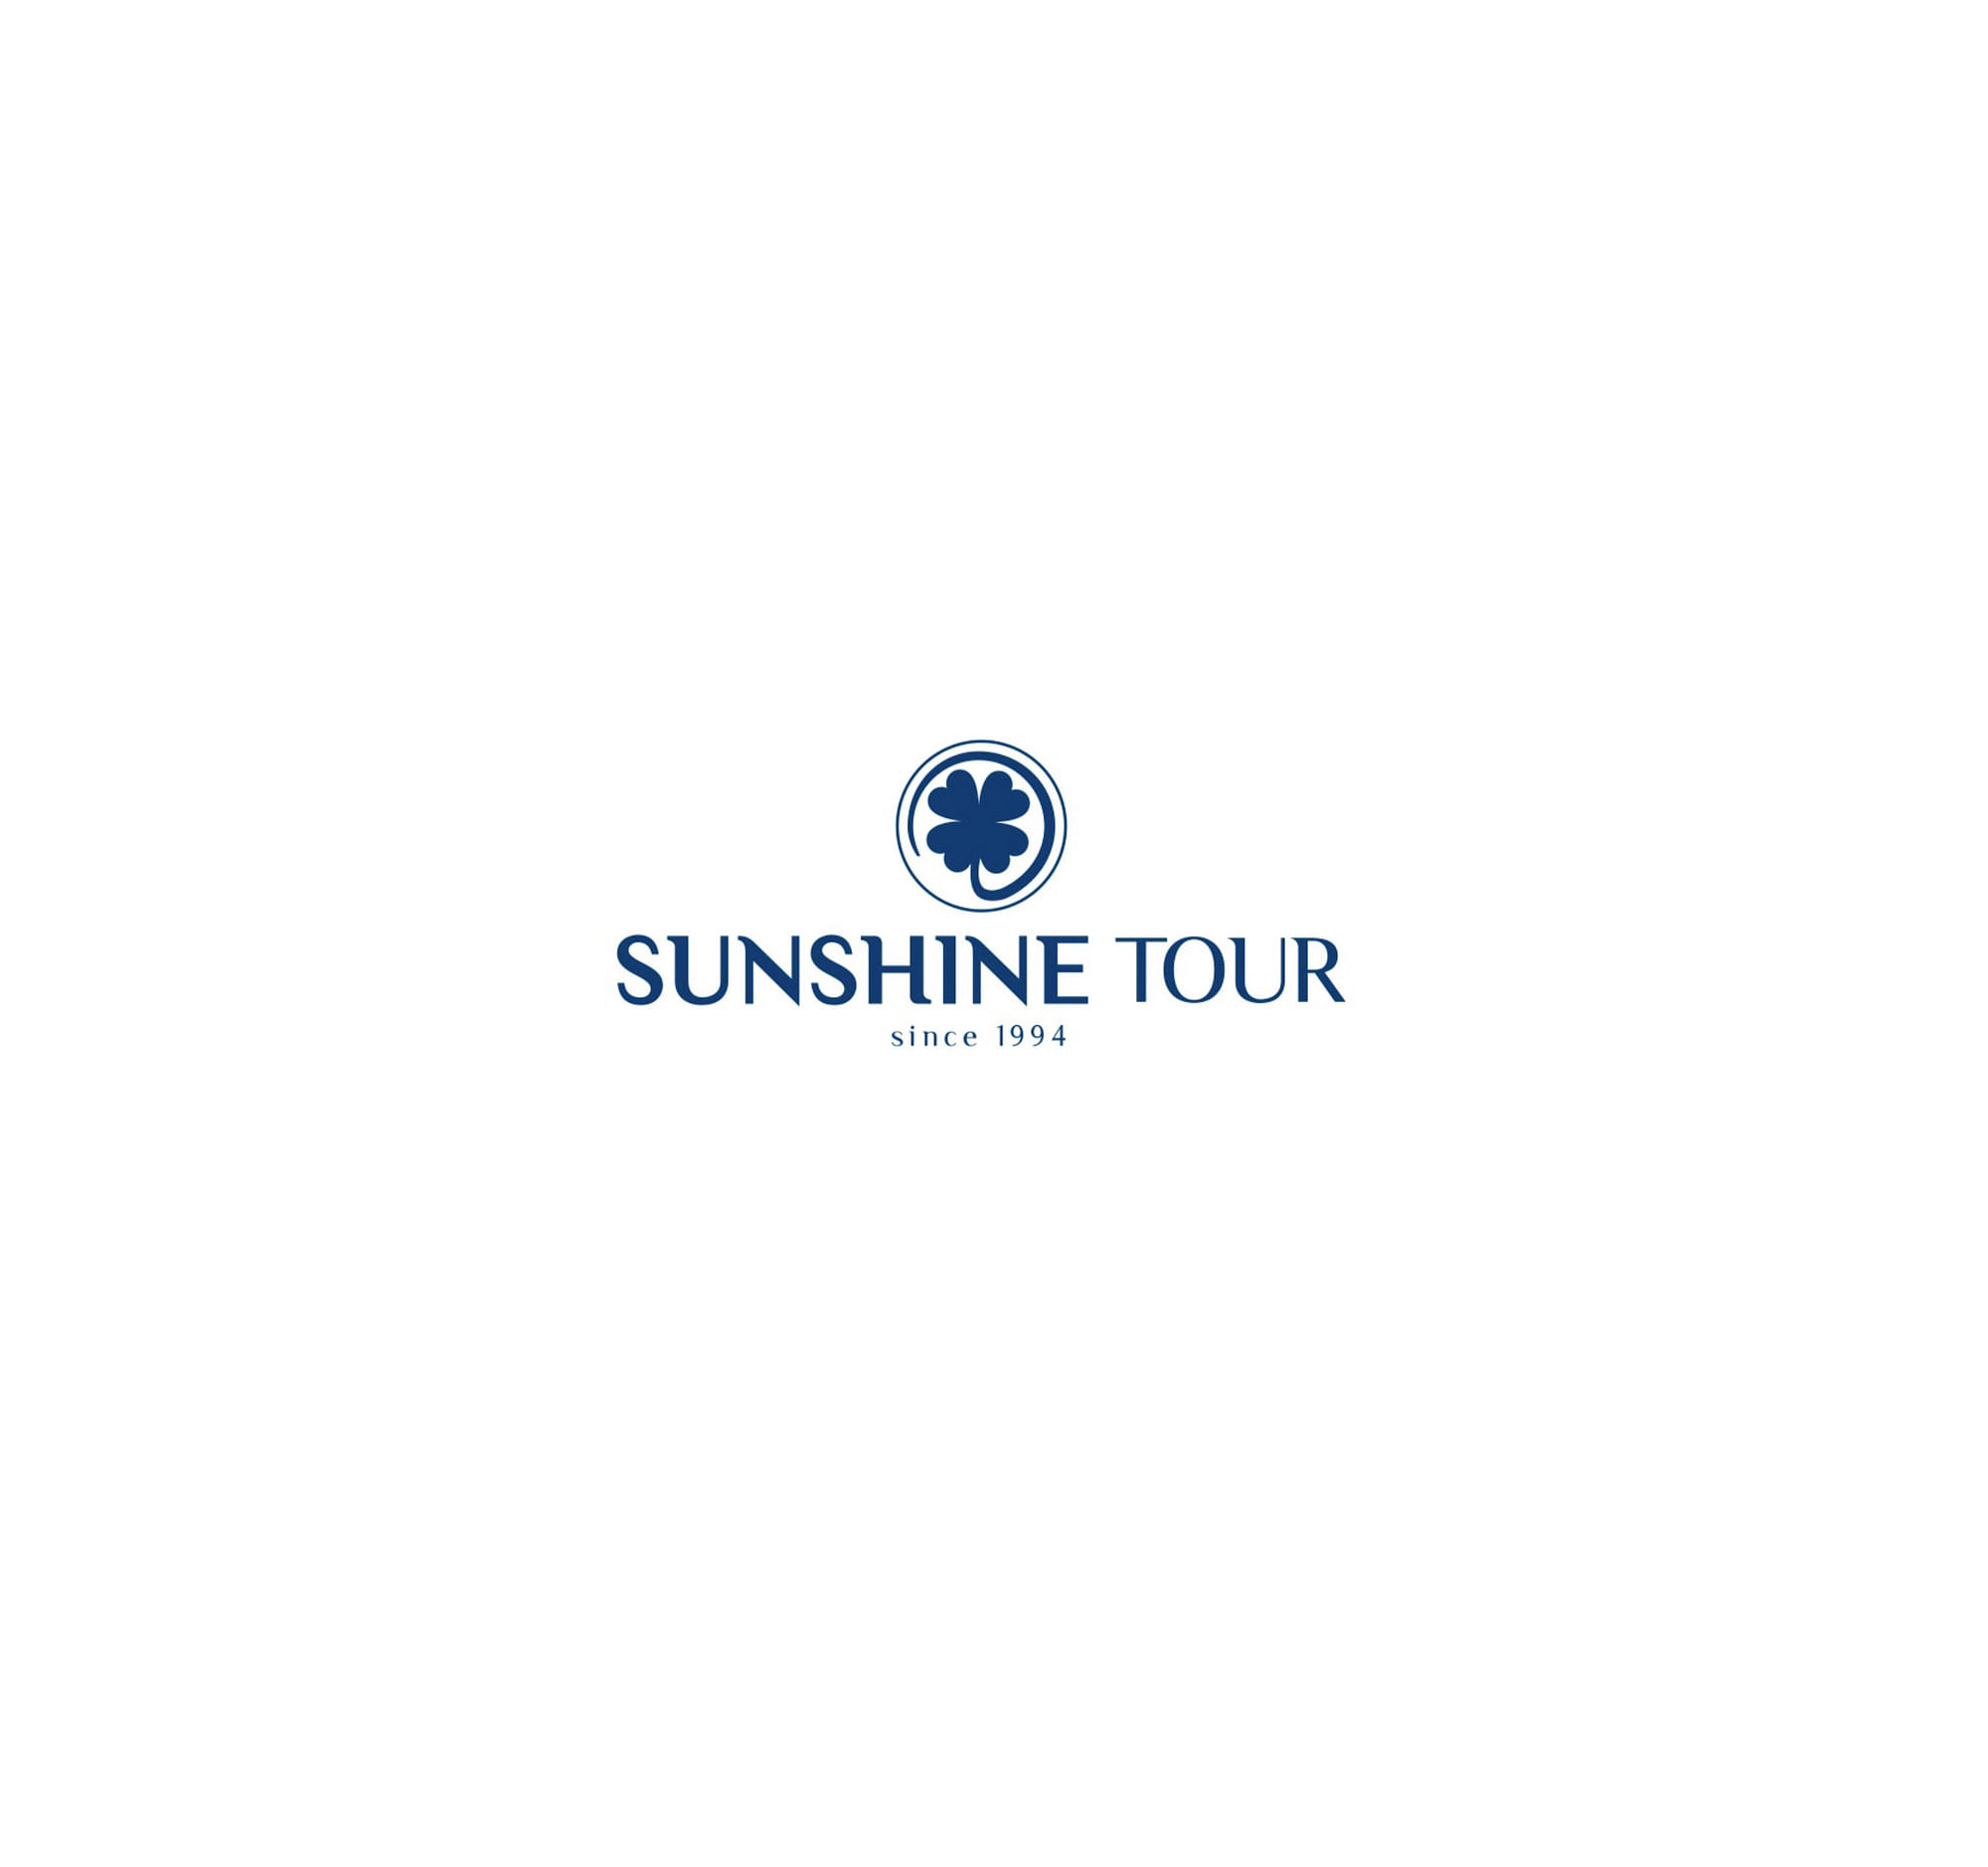 Sunshine Tourin kisajärjestäjät ovat turhautuneita, sillä heidän ilmoituksensa mukaan alueelta ei ole löydetty EHV-virusta.